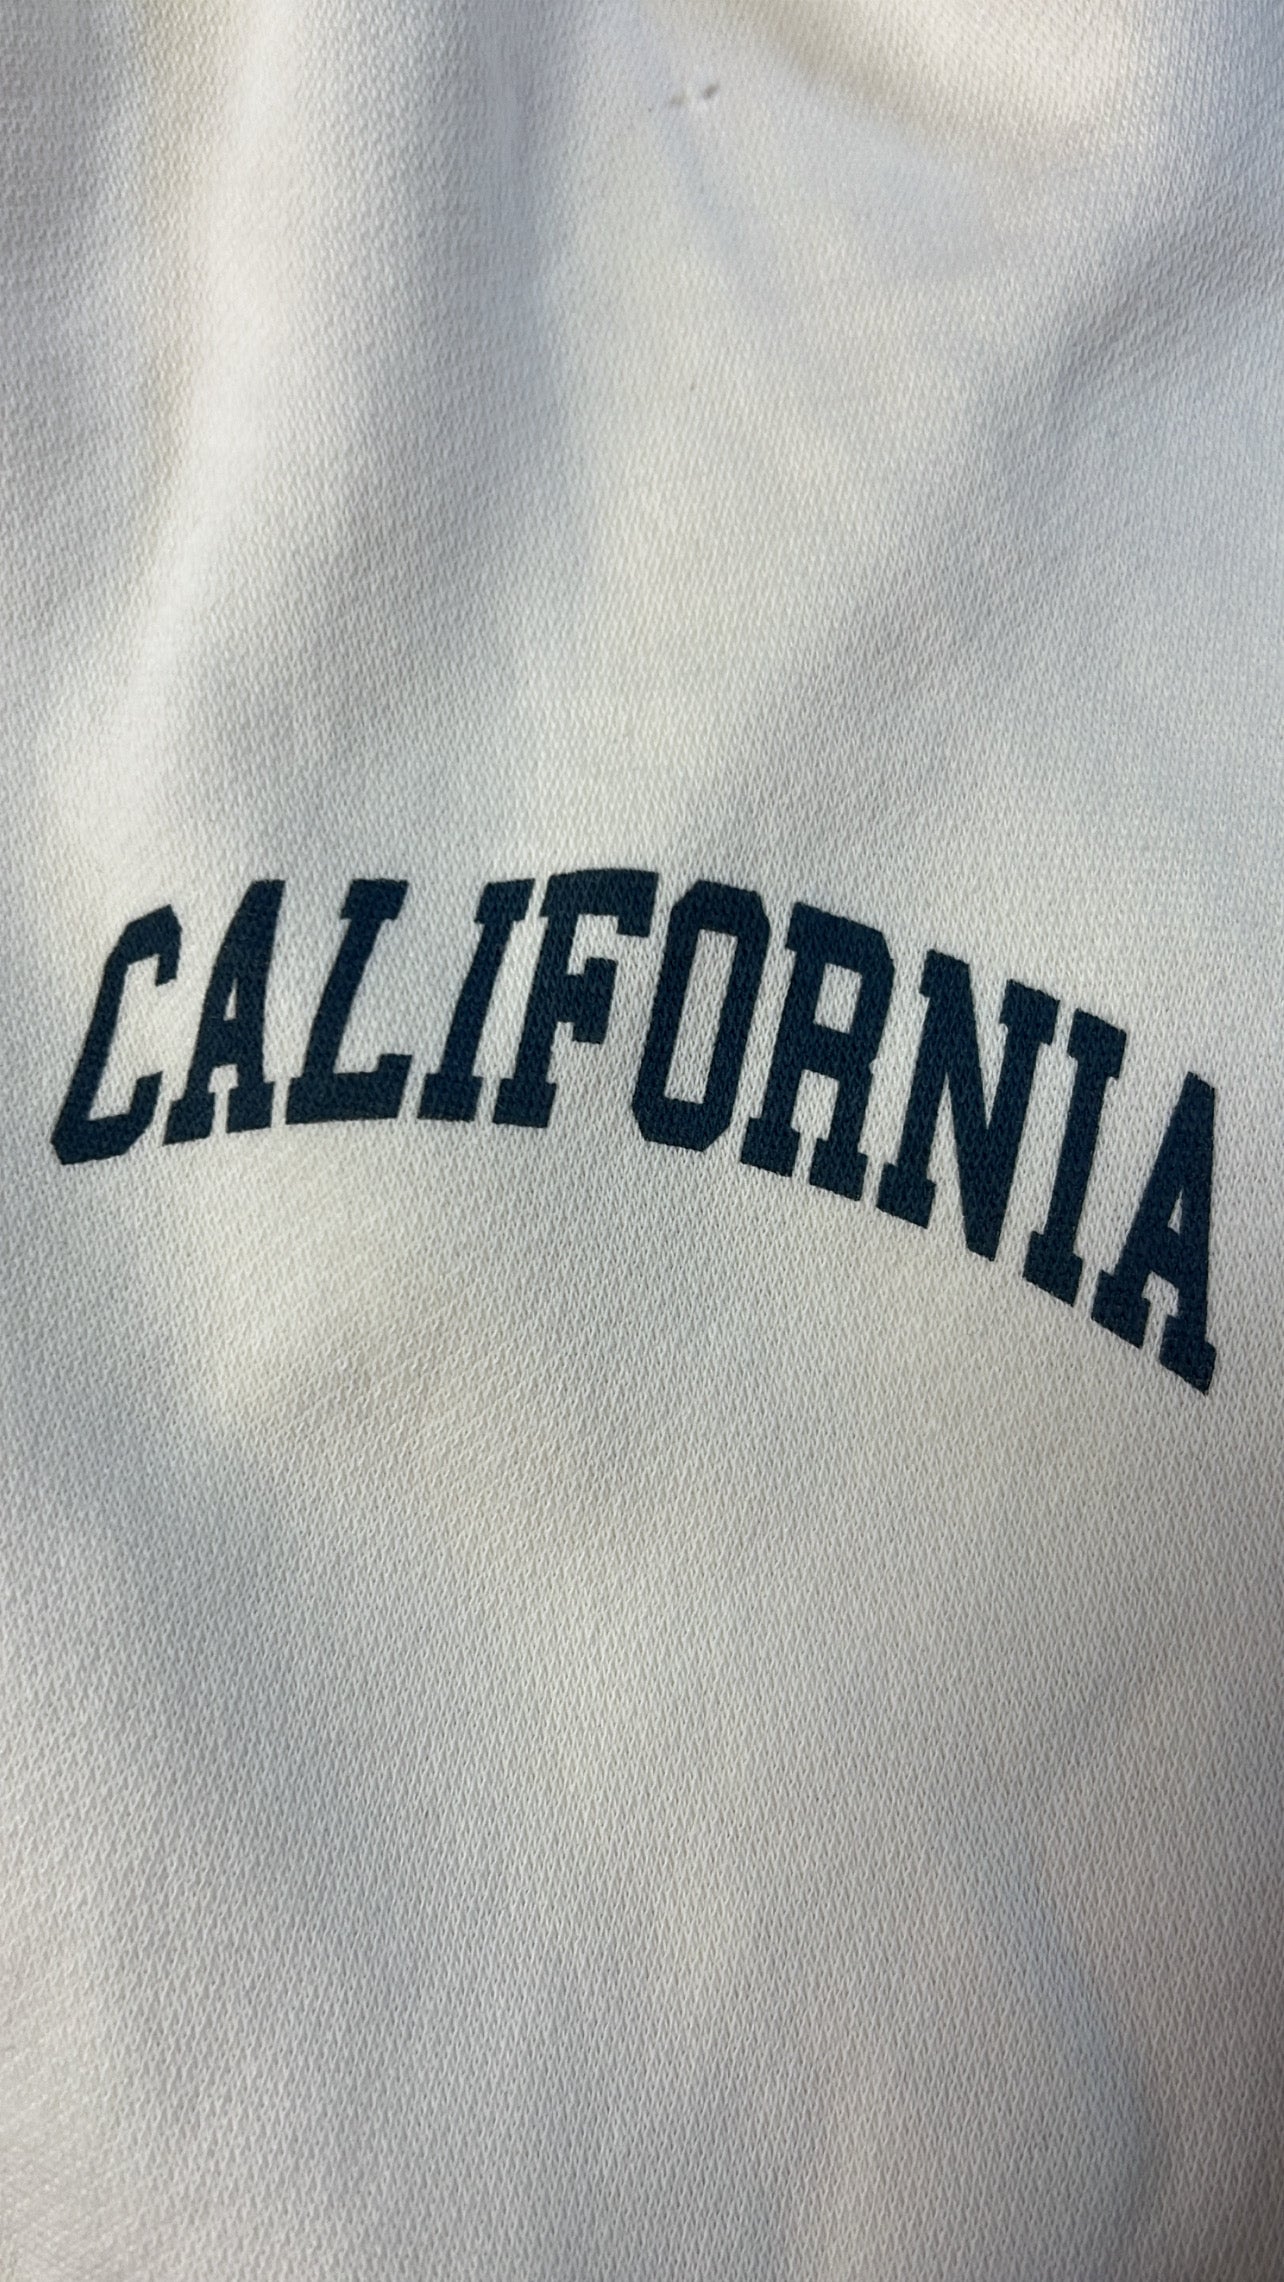 California living cozy sweatpants - beige/navy